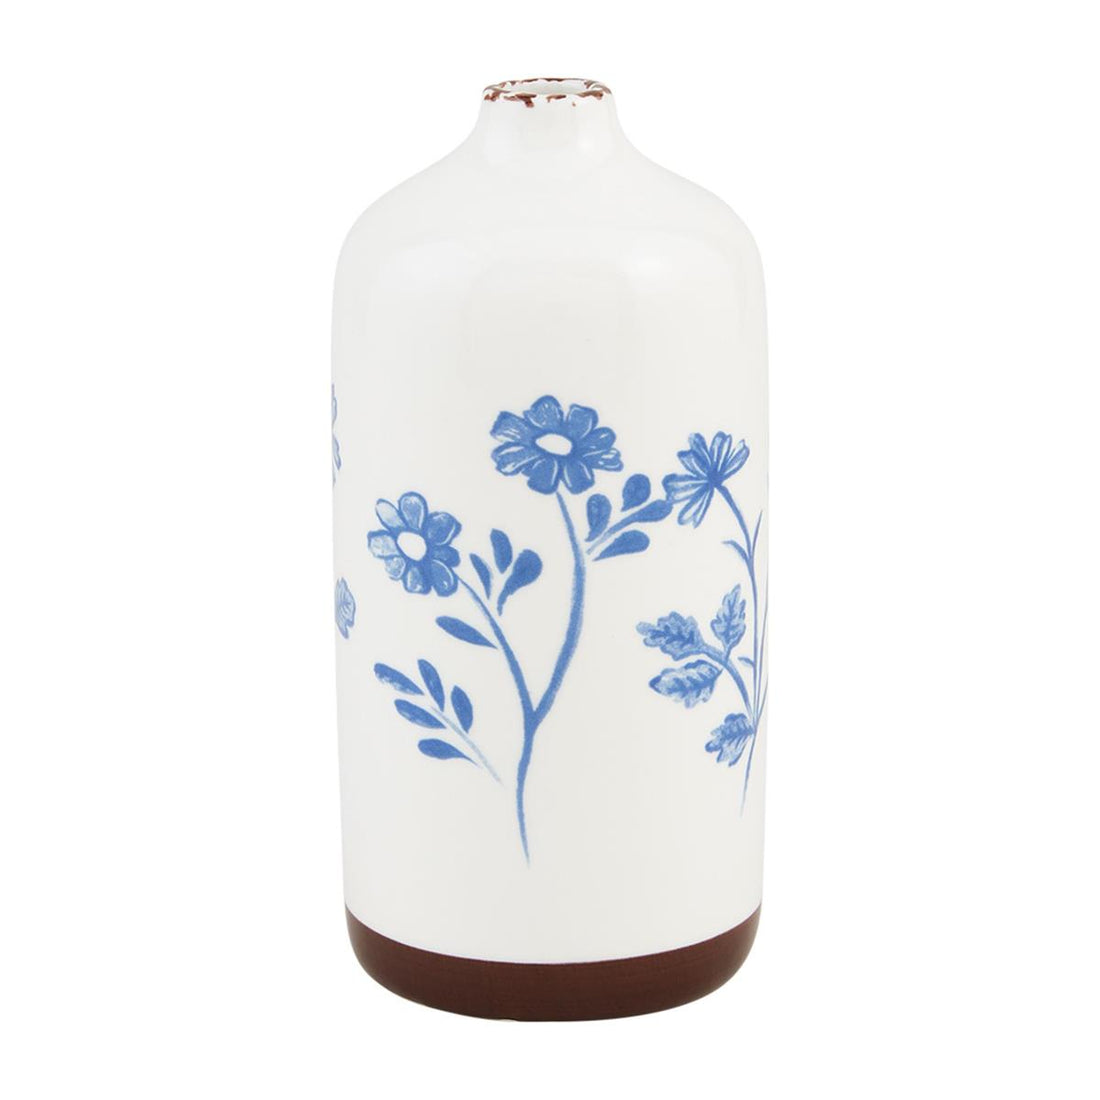 Blue Floral Bud Vase